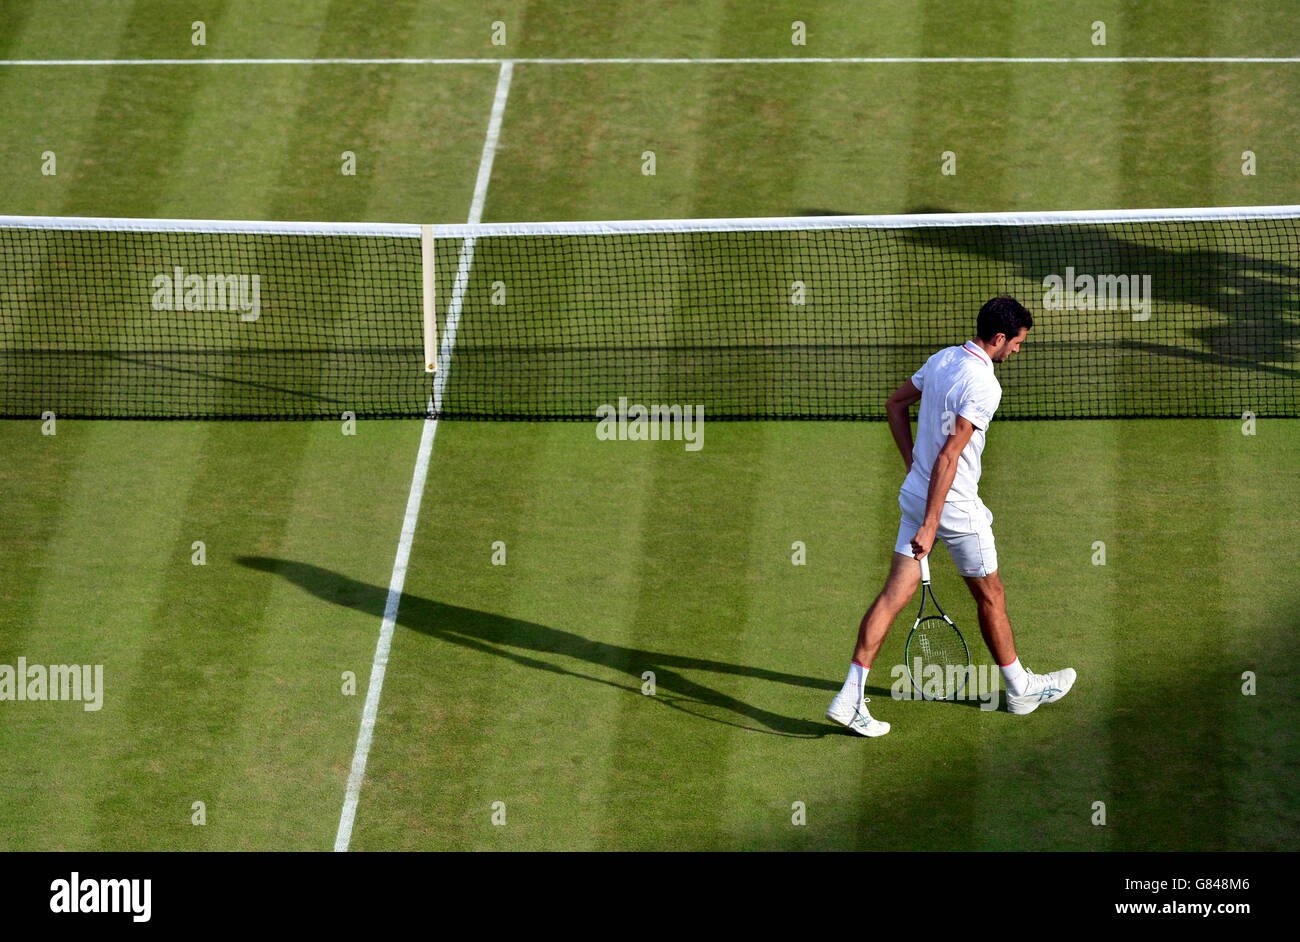 James Ward deja su servicio contra Vasek Pospisil durante el sexto día del Campeonato de Wimbledon en el All England Lawn Tennis and Croquet Club, Wimbledon. Foto de stock